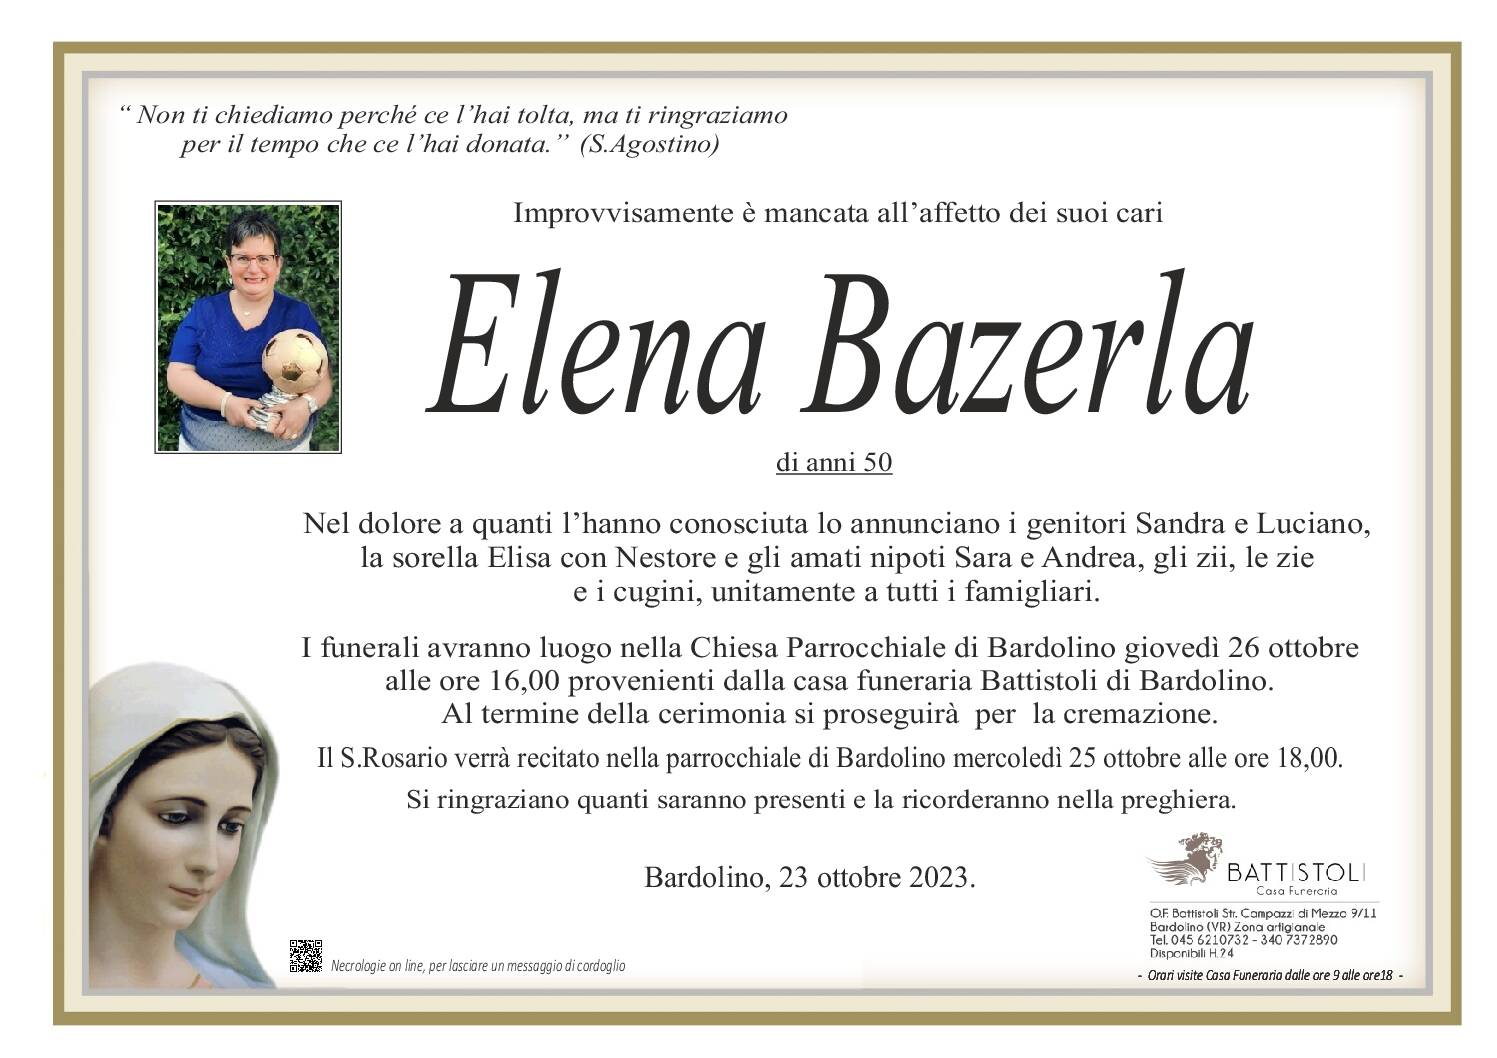 Bazerla  Elena